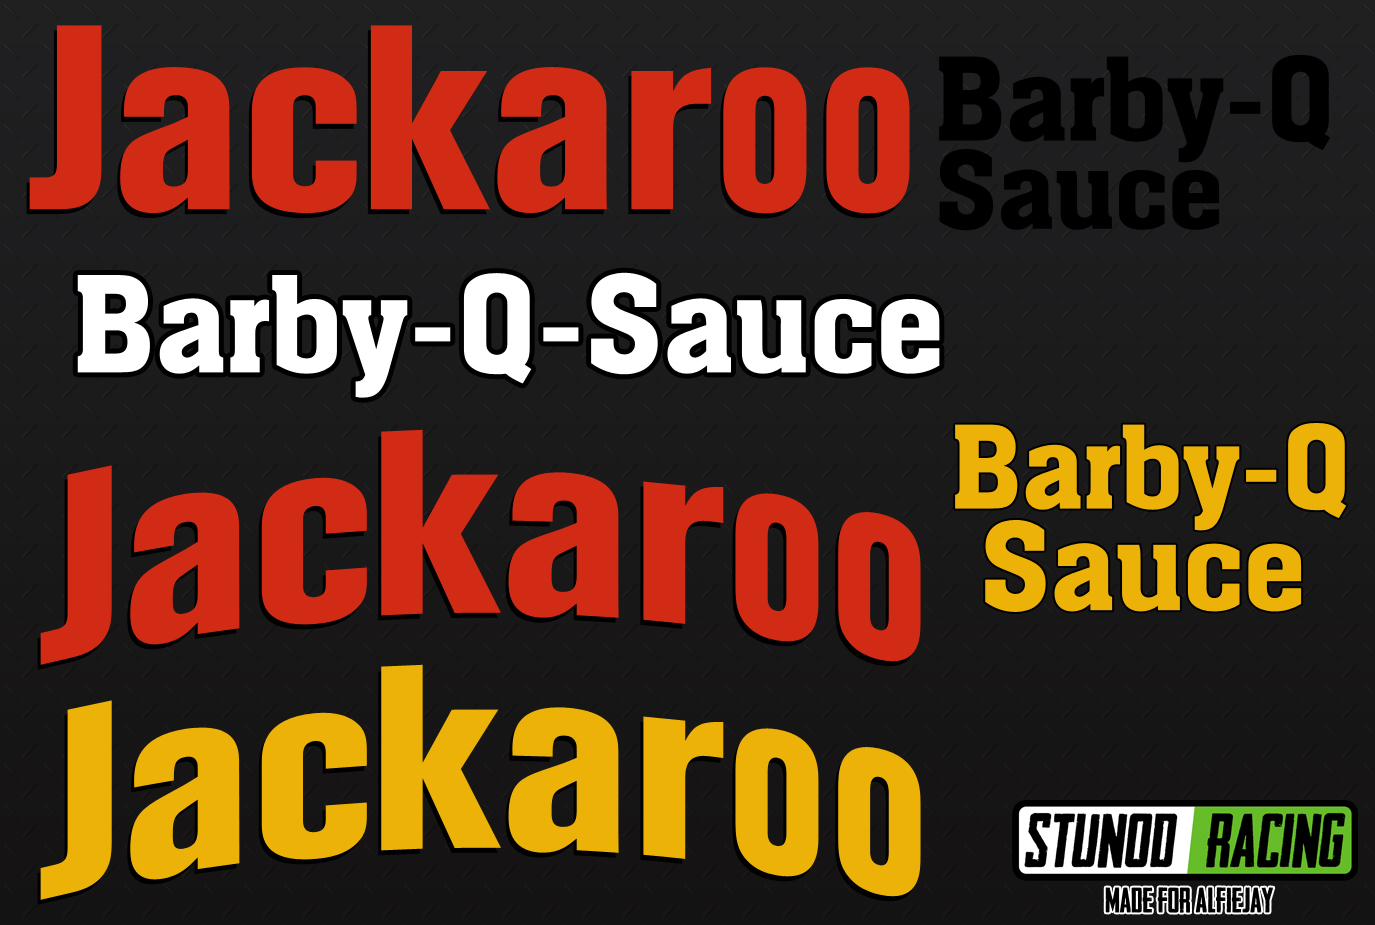 StunodRacing-Jackaroo-Barby-Q-Sauce-Logo.jpg